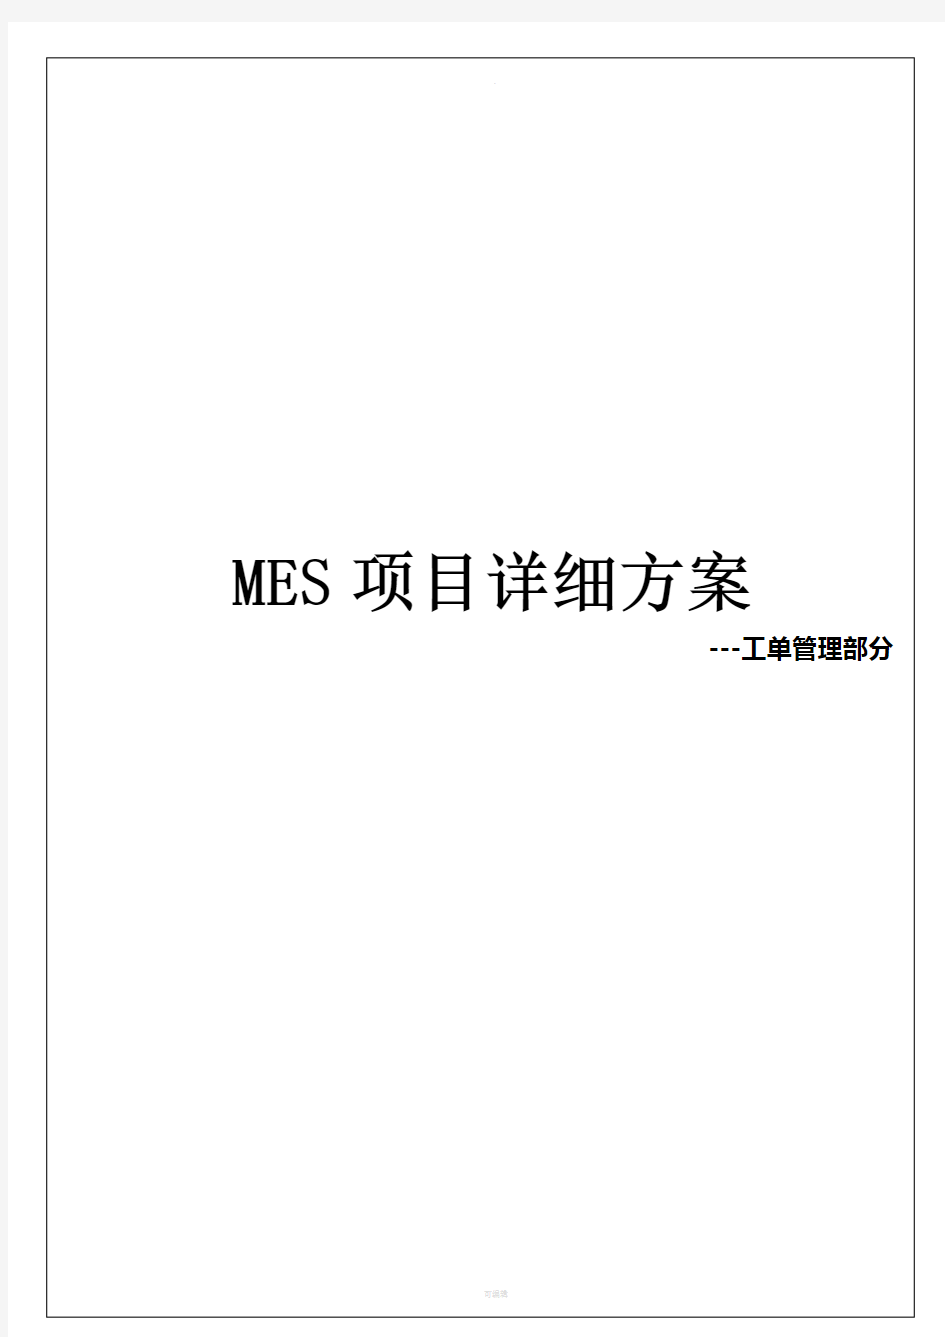 MES-工单管理详细方案